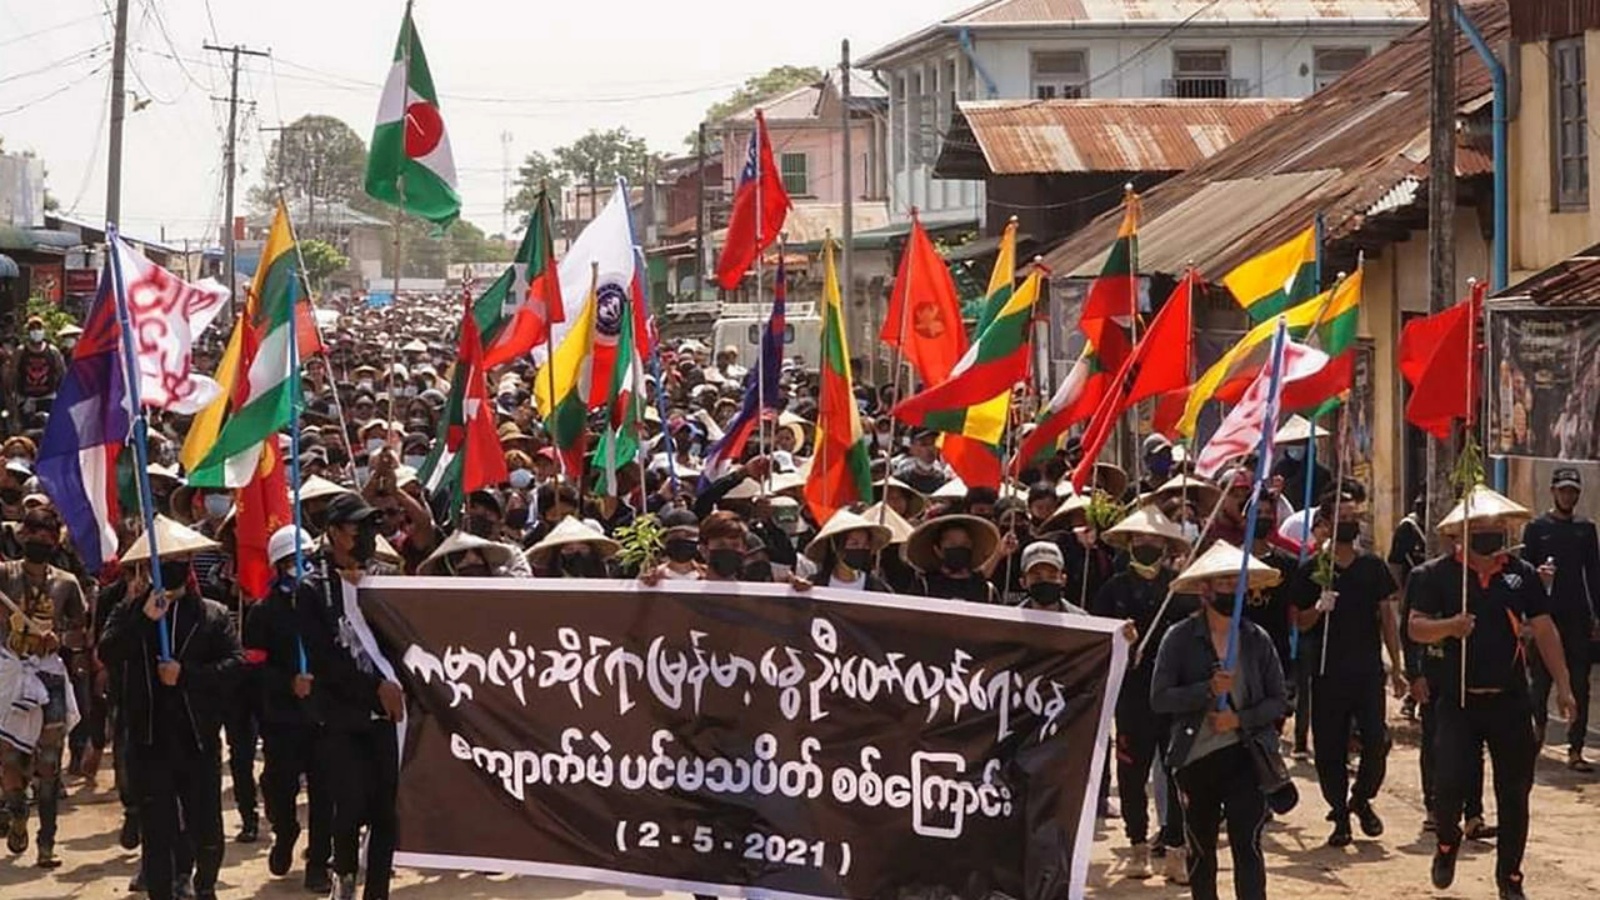 متظاهرون يحتجون على الانقلاب في بورما في 2 مايو 2021 في كياوكمي